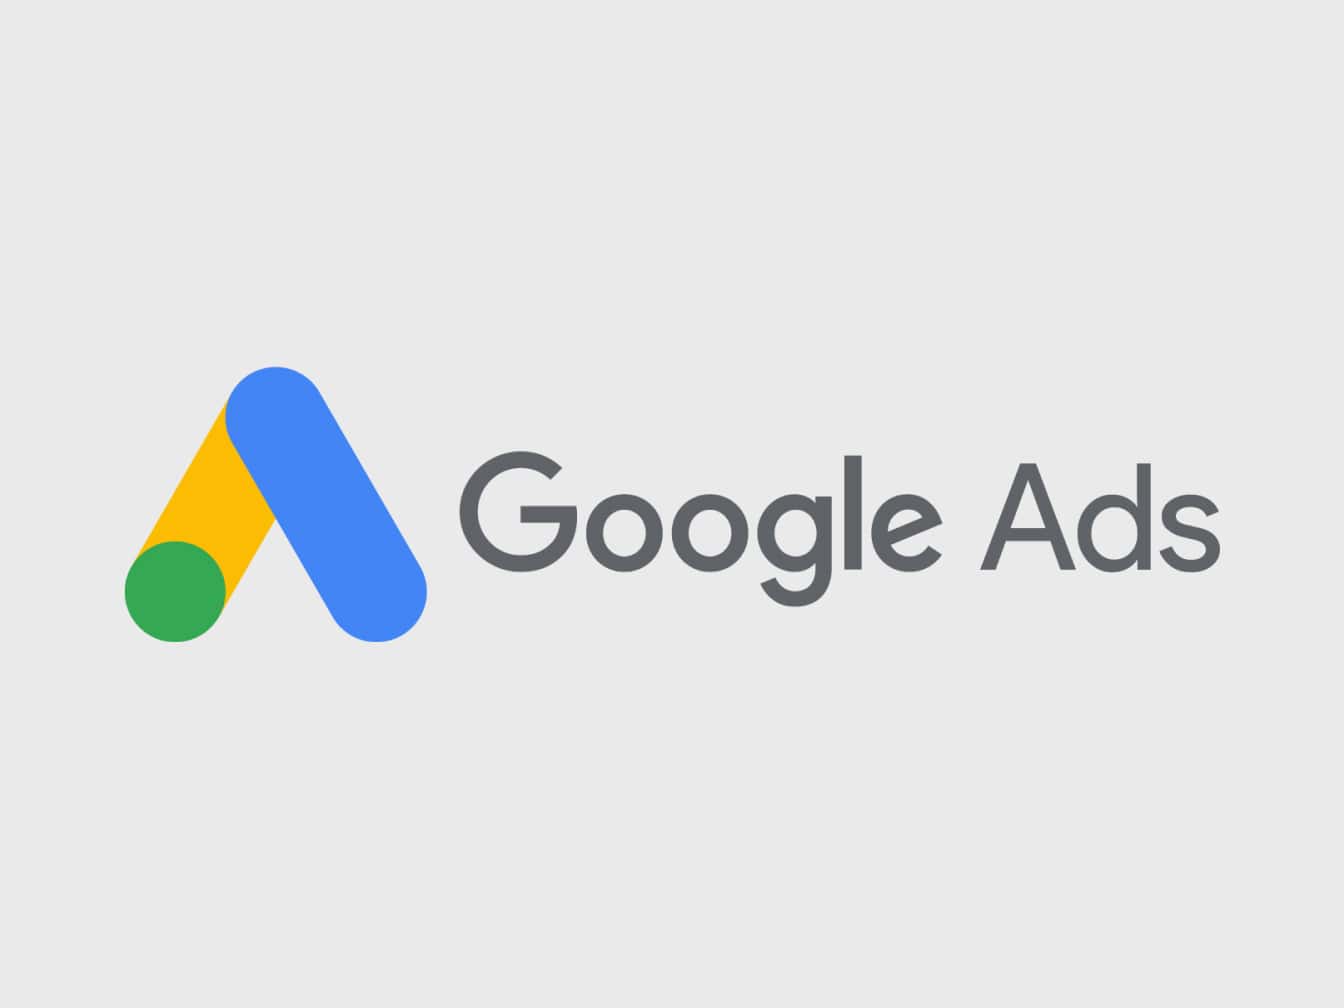 Google Ads logo image